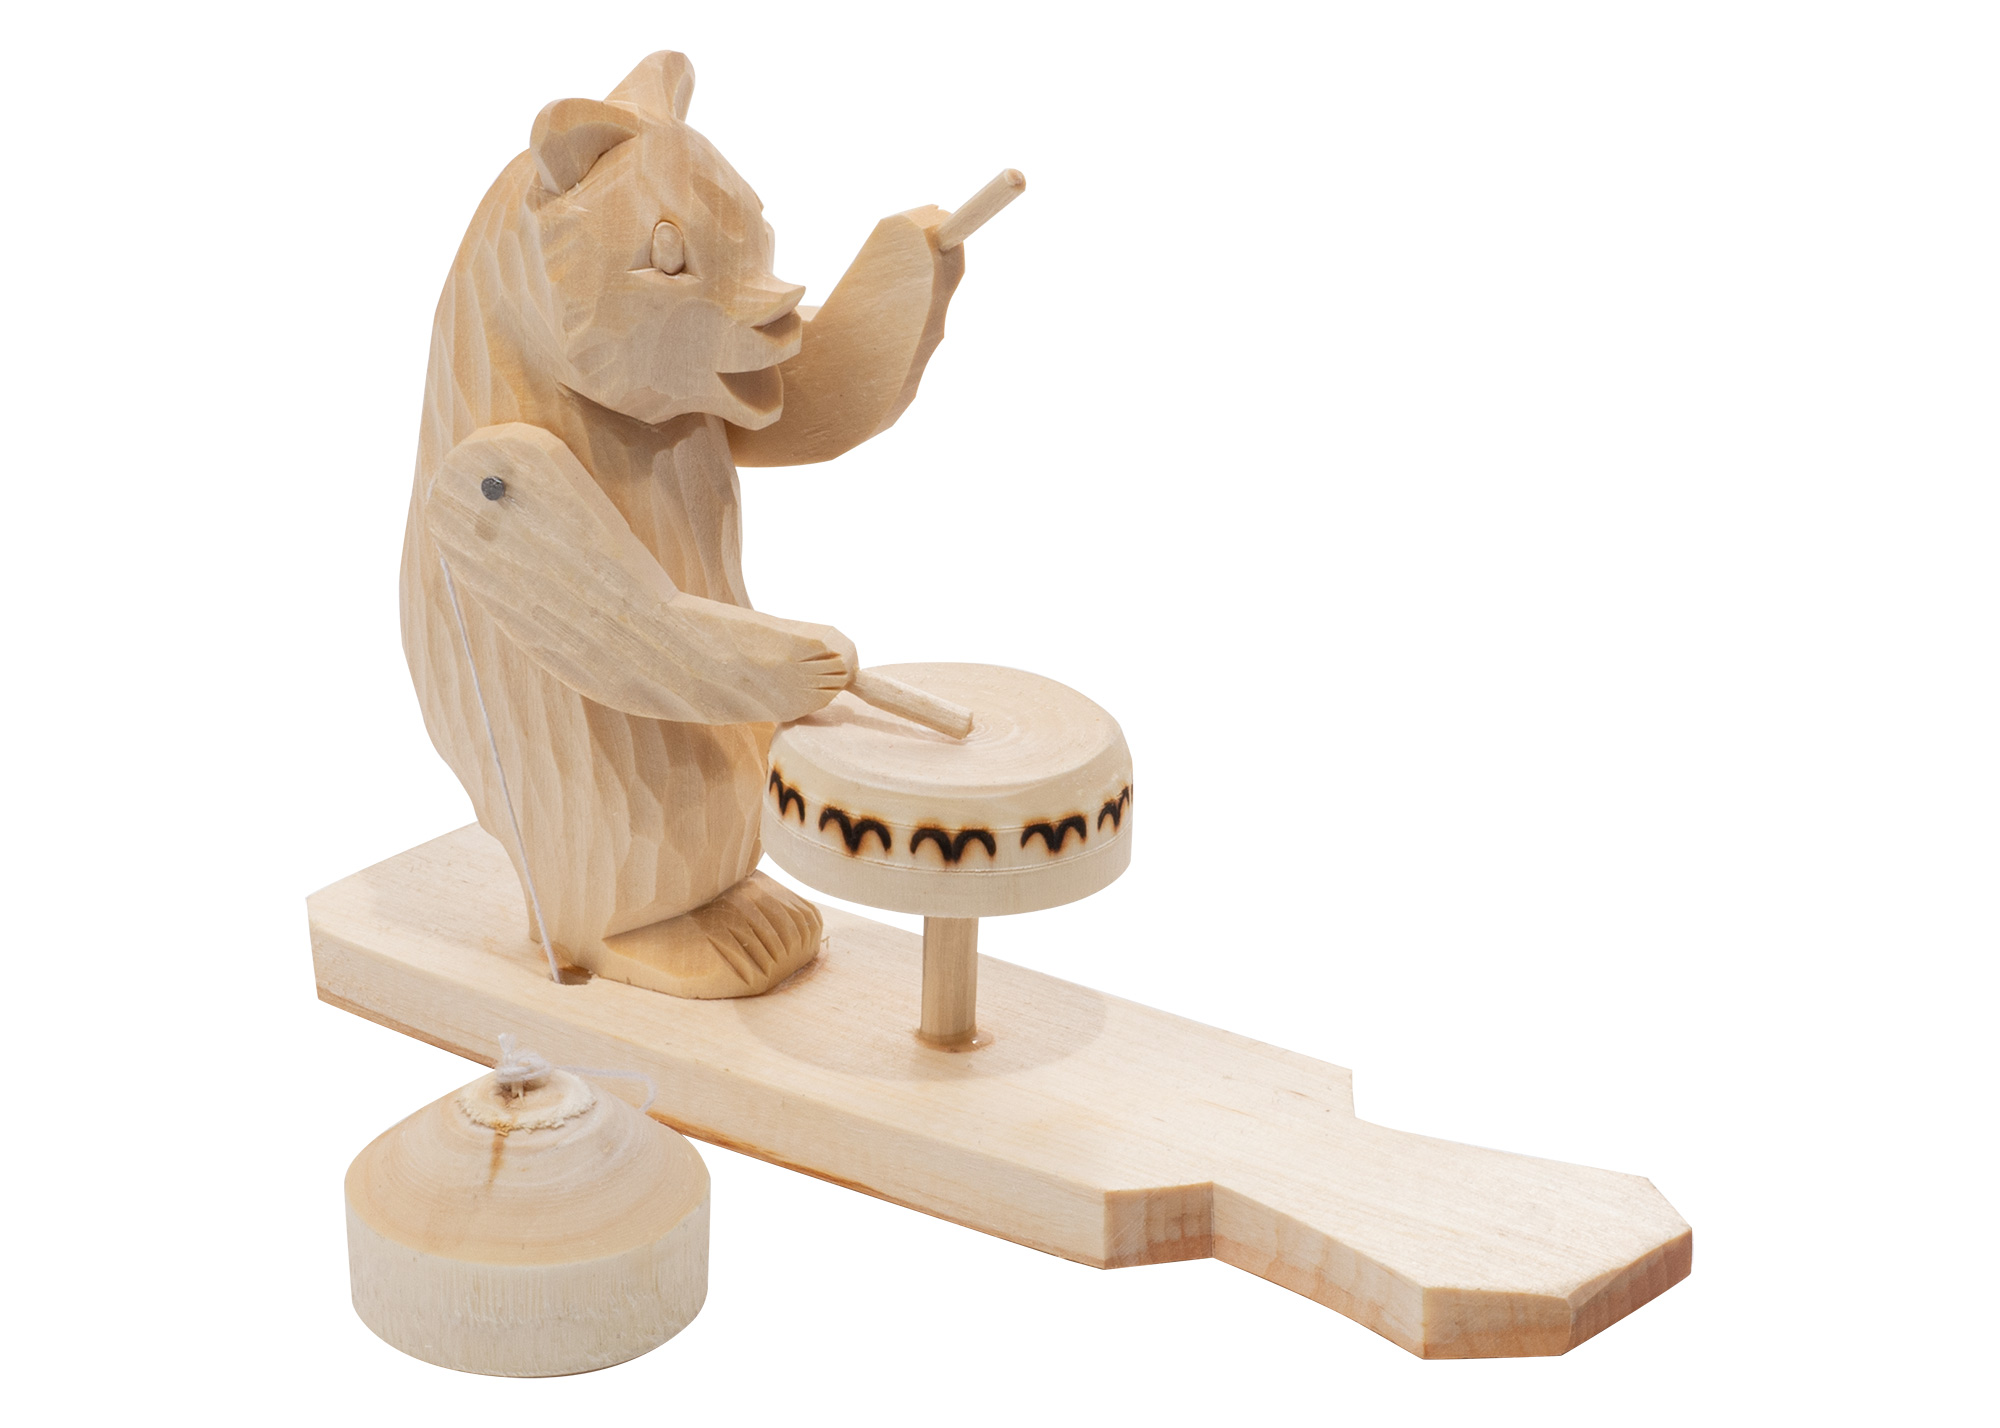 Buy Drummer Bear Carved Toy at GoldenCockerel.com